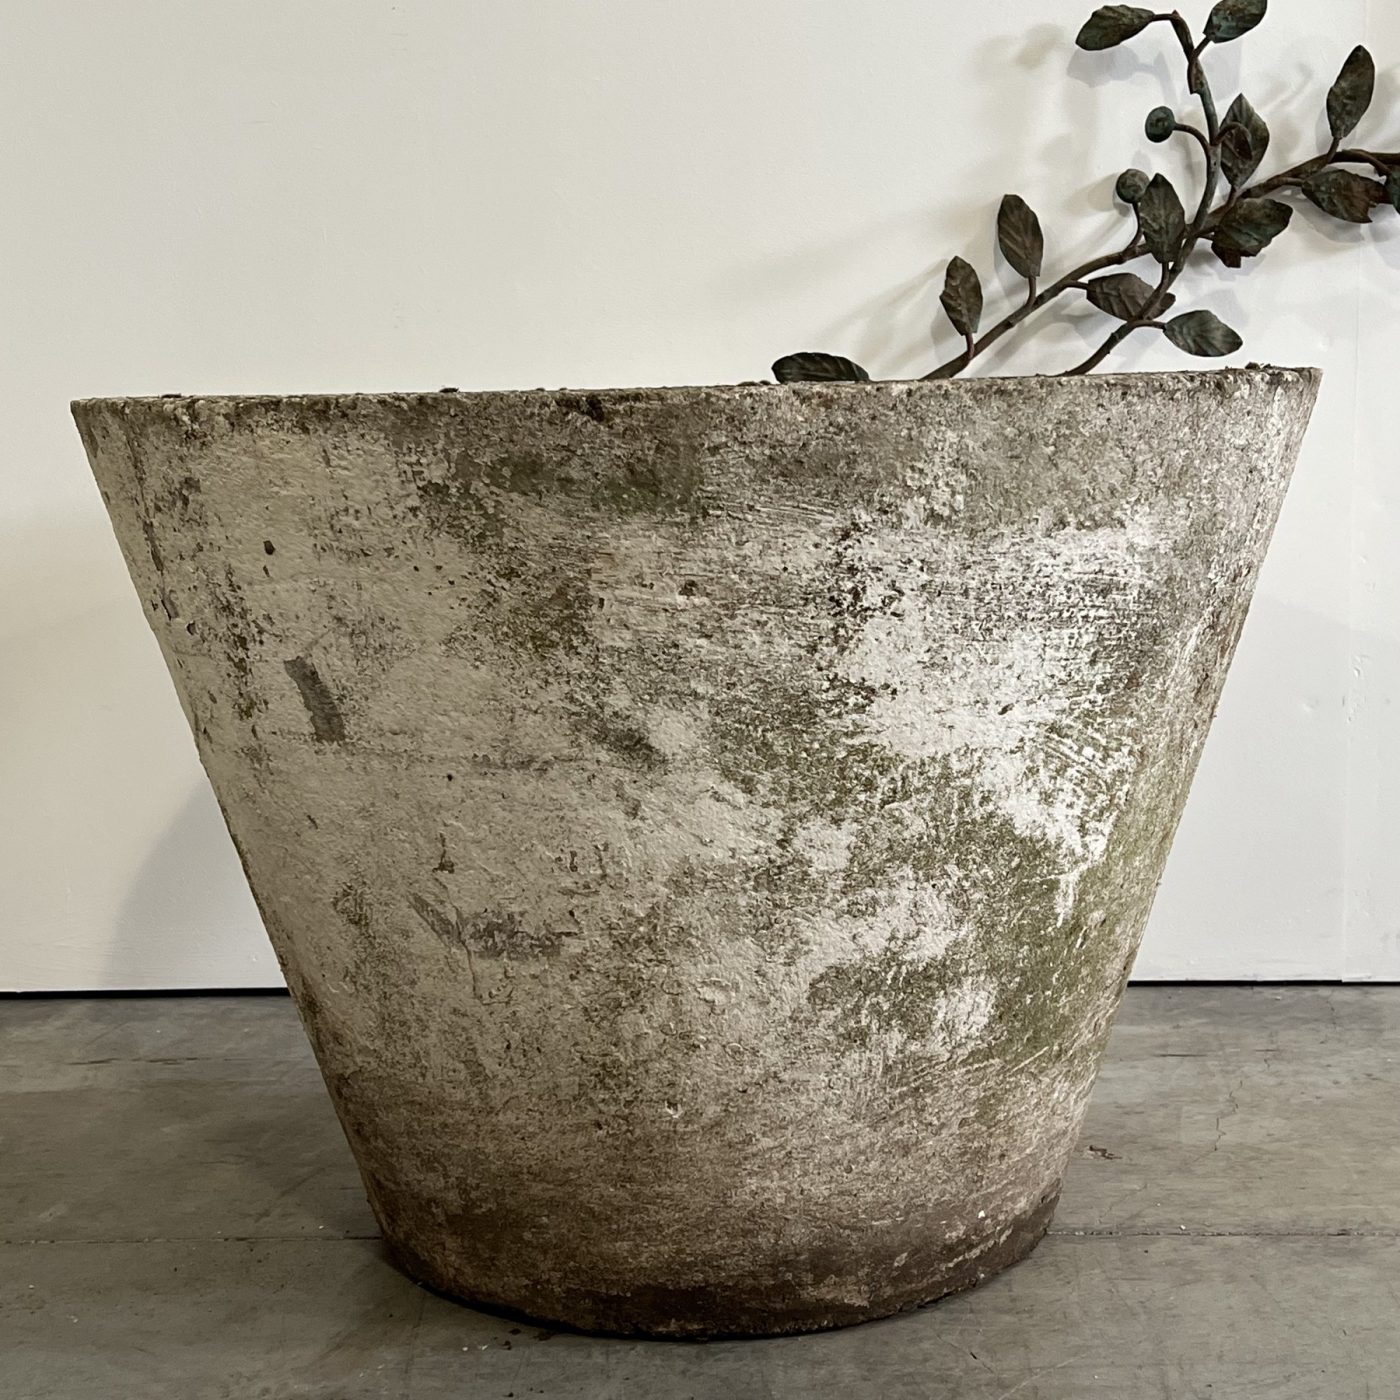 objet-vagabond-concrete-planter0005